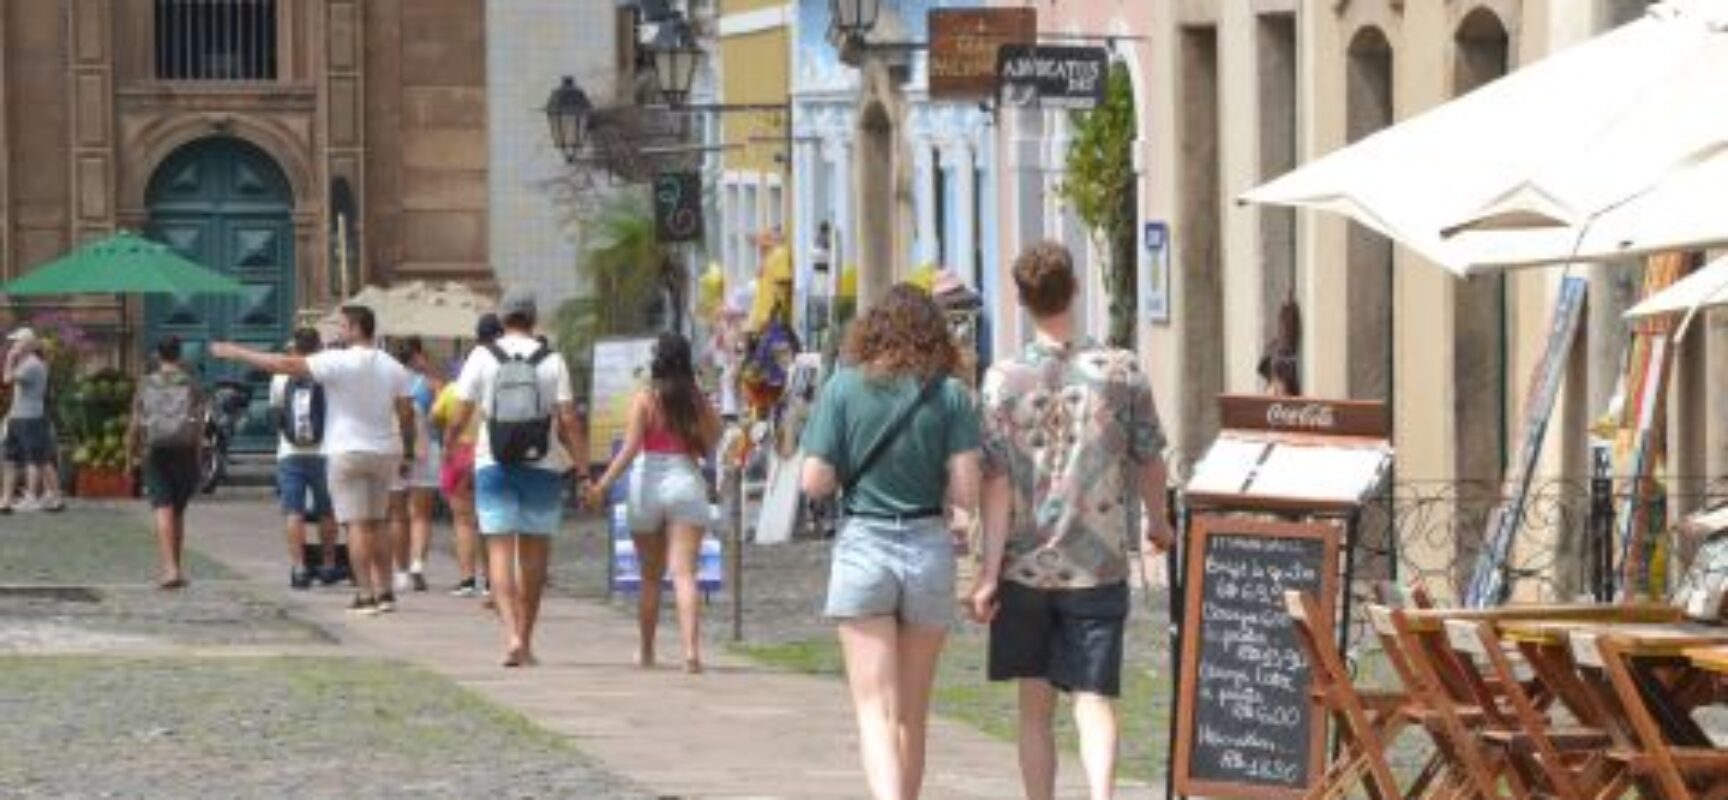 Turismo responde por 11% dos empregos gerados na Bahia em setembro